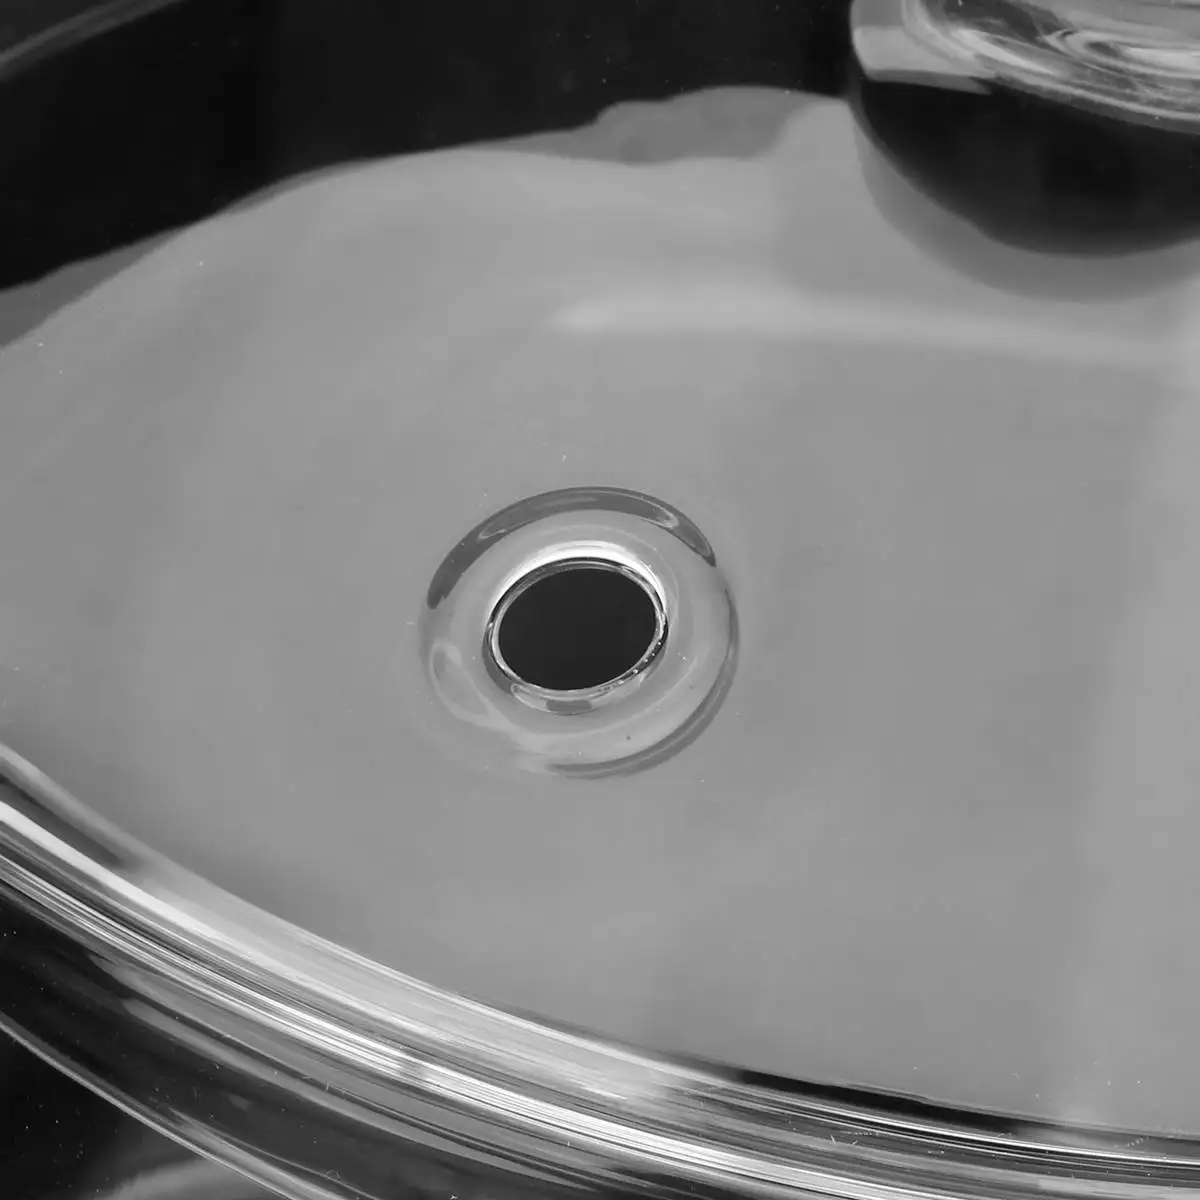 Бытовая прозрачная стеклянная кастрюля для супа, электрическая керамическая плита с подогревом, стеклянная чаша ручной работы, кухонные принадлежности 1,5/л